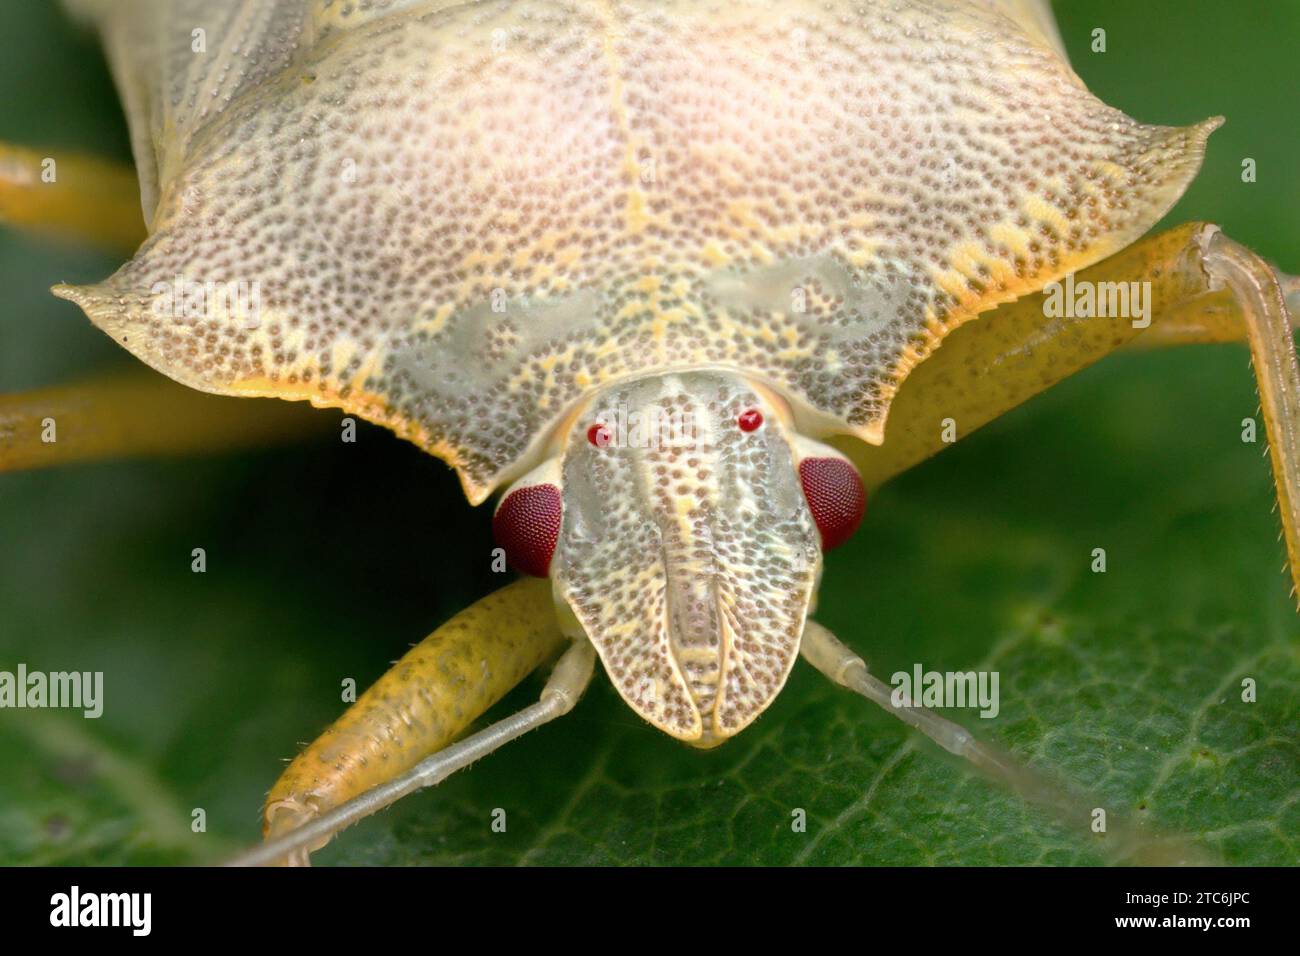 Frontalansicht eines teneralen Waldschildbugs (Pentatoma rufipes). Tipperary, Irland Stockfoto